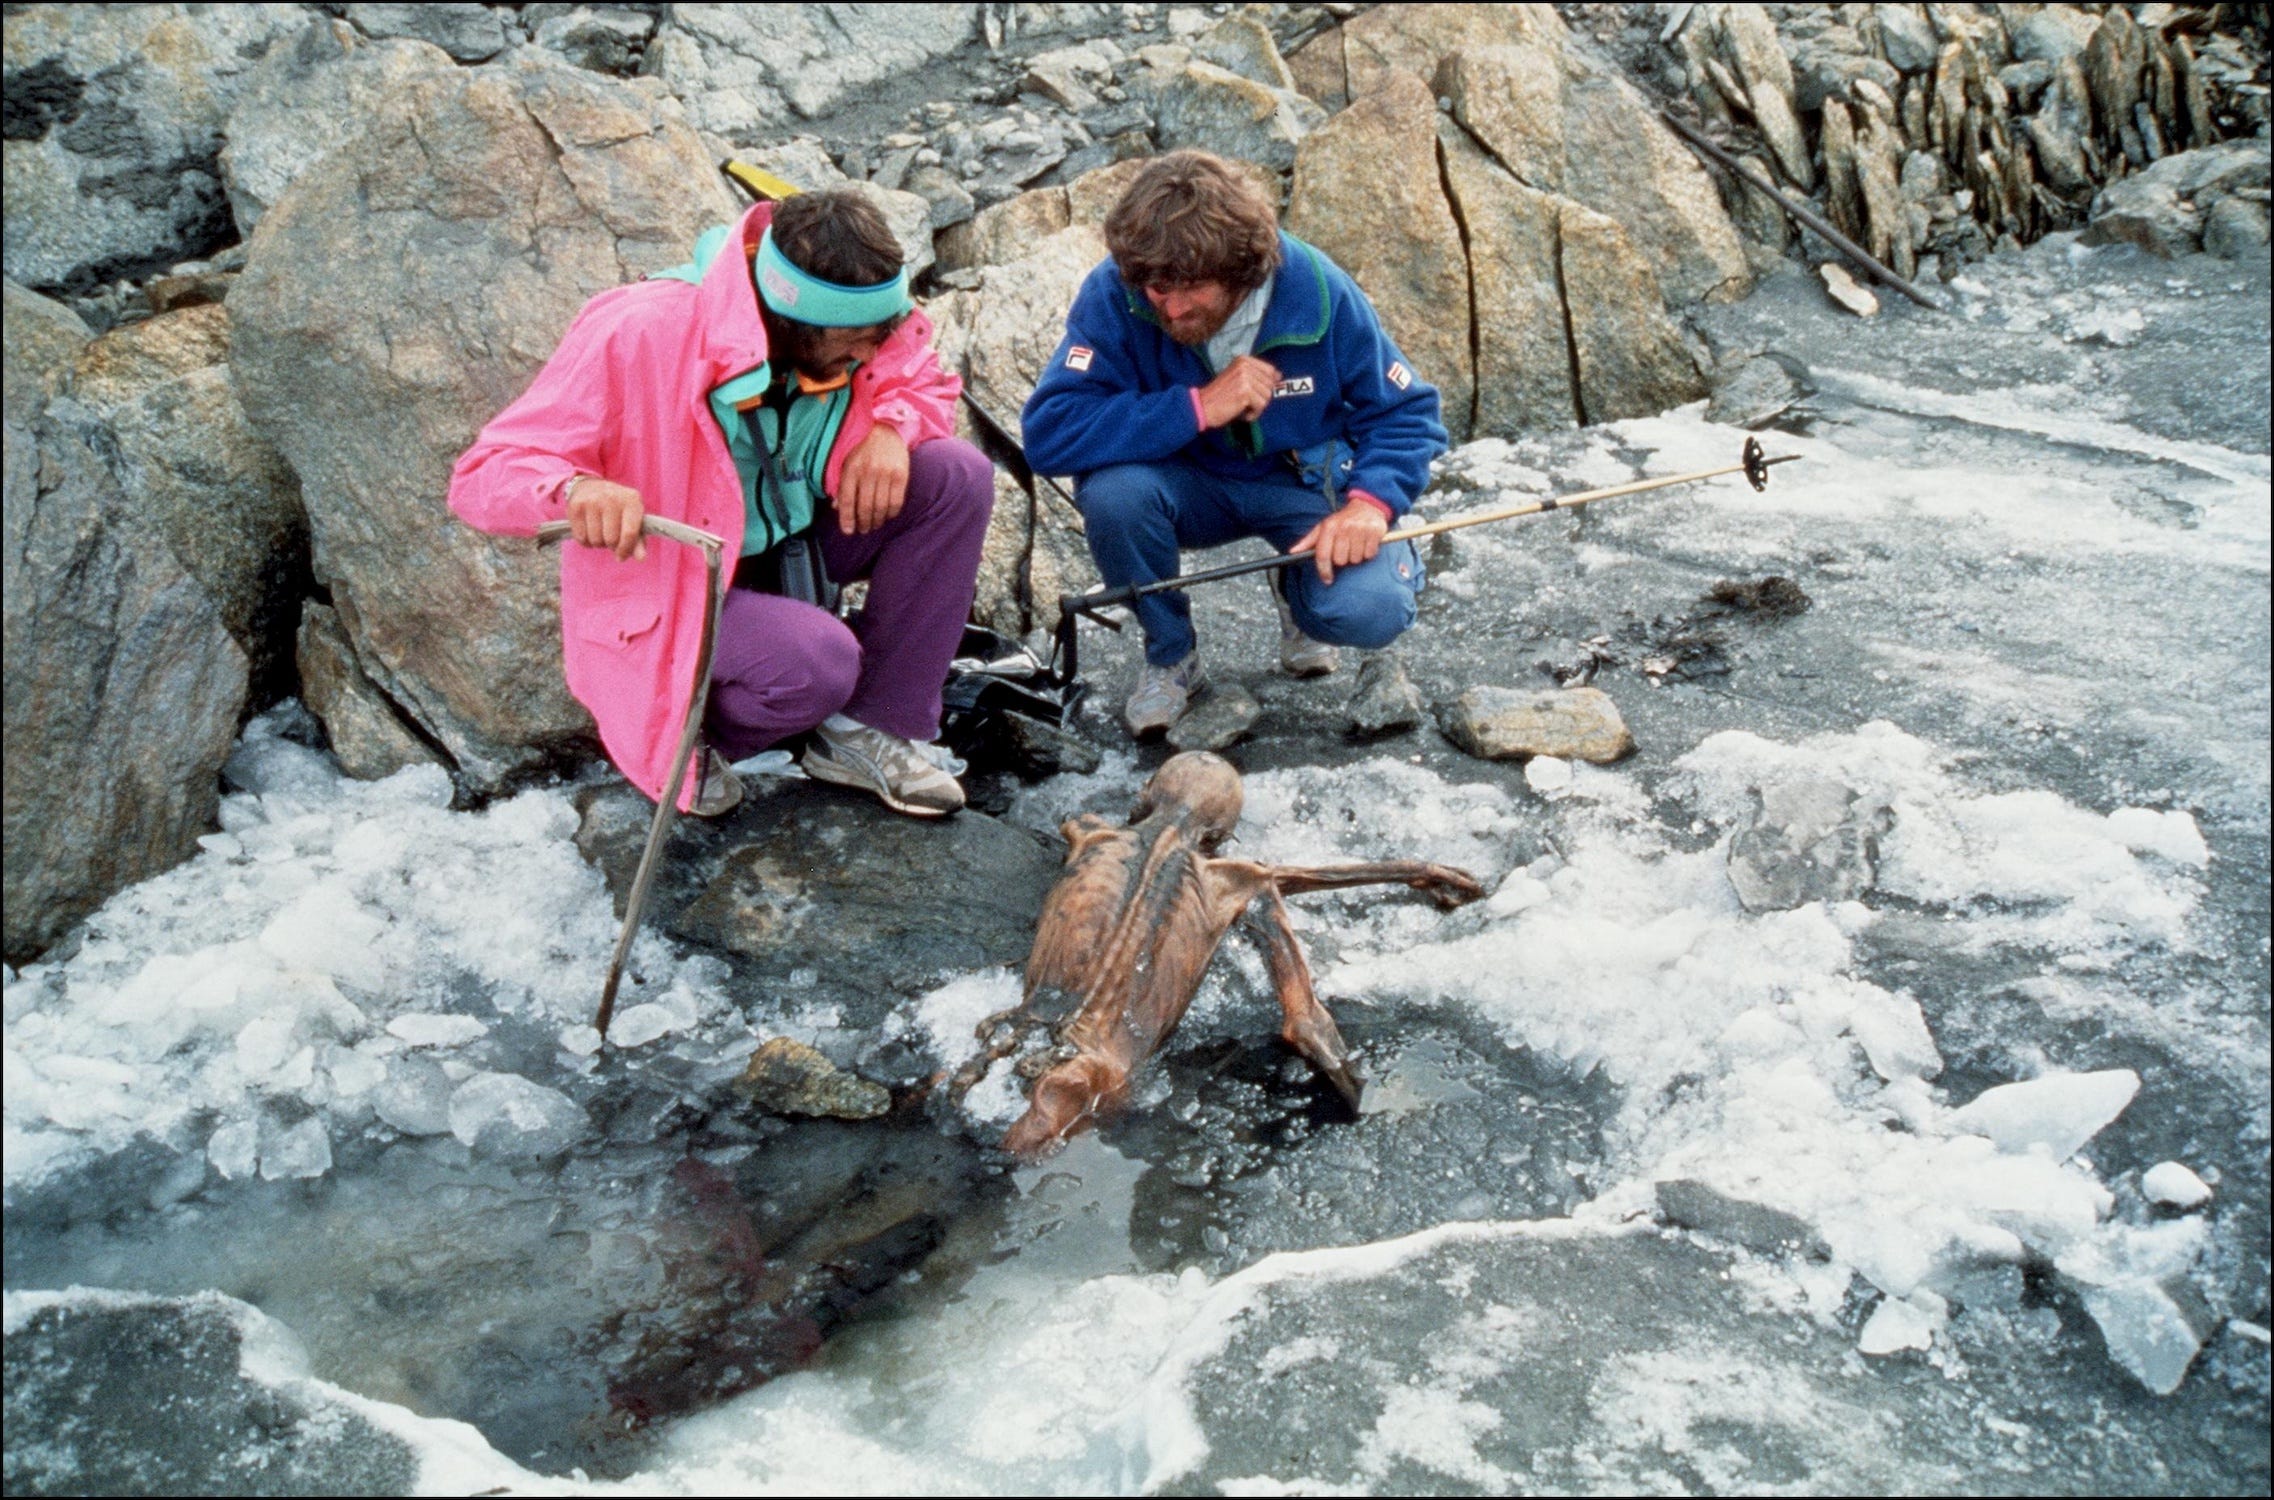 Zwei Männer mit struppigen Haaren in Wanderkleidung aus den 90er-Jahren krabbeln auf schmelzendem Eis neben einer verdeckten Mumie, die so positioniert ist, als würde sie aus einer Pfütze im Eis kriechen